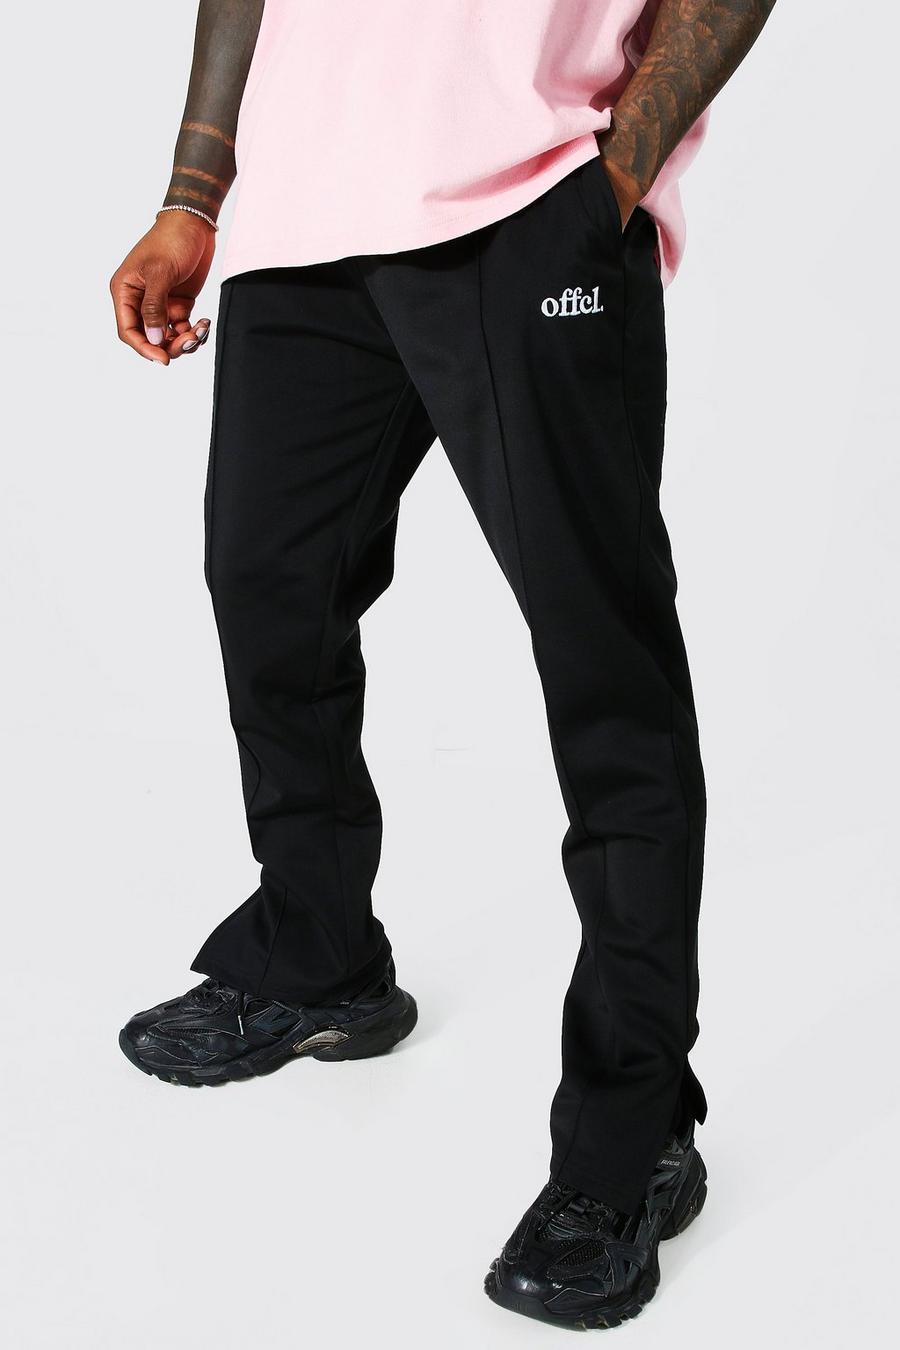 Pantaloni tuta Offcl in tricot Slim Fit con spacco sul fondo, Black nero image number 1